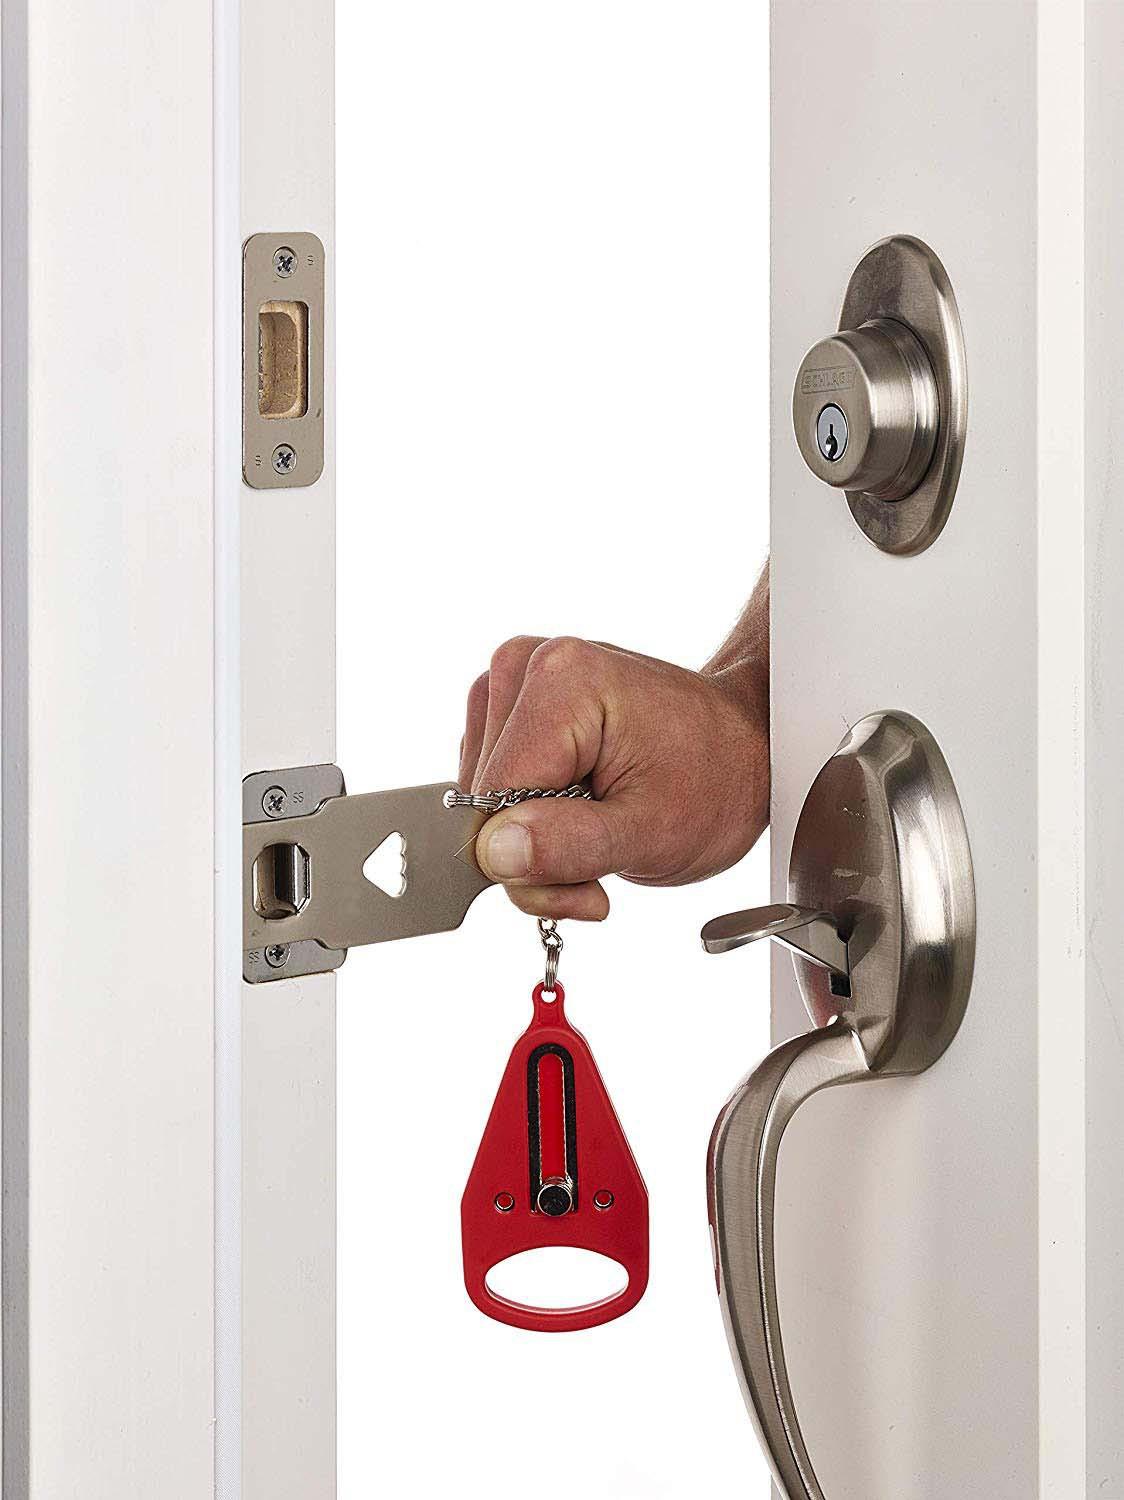 Pp metal bærbar sikkerhedsdørlås erstatter addalock-kompatibel rejselås tyverisikring privatliv hotelværelse